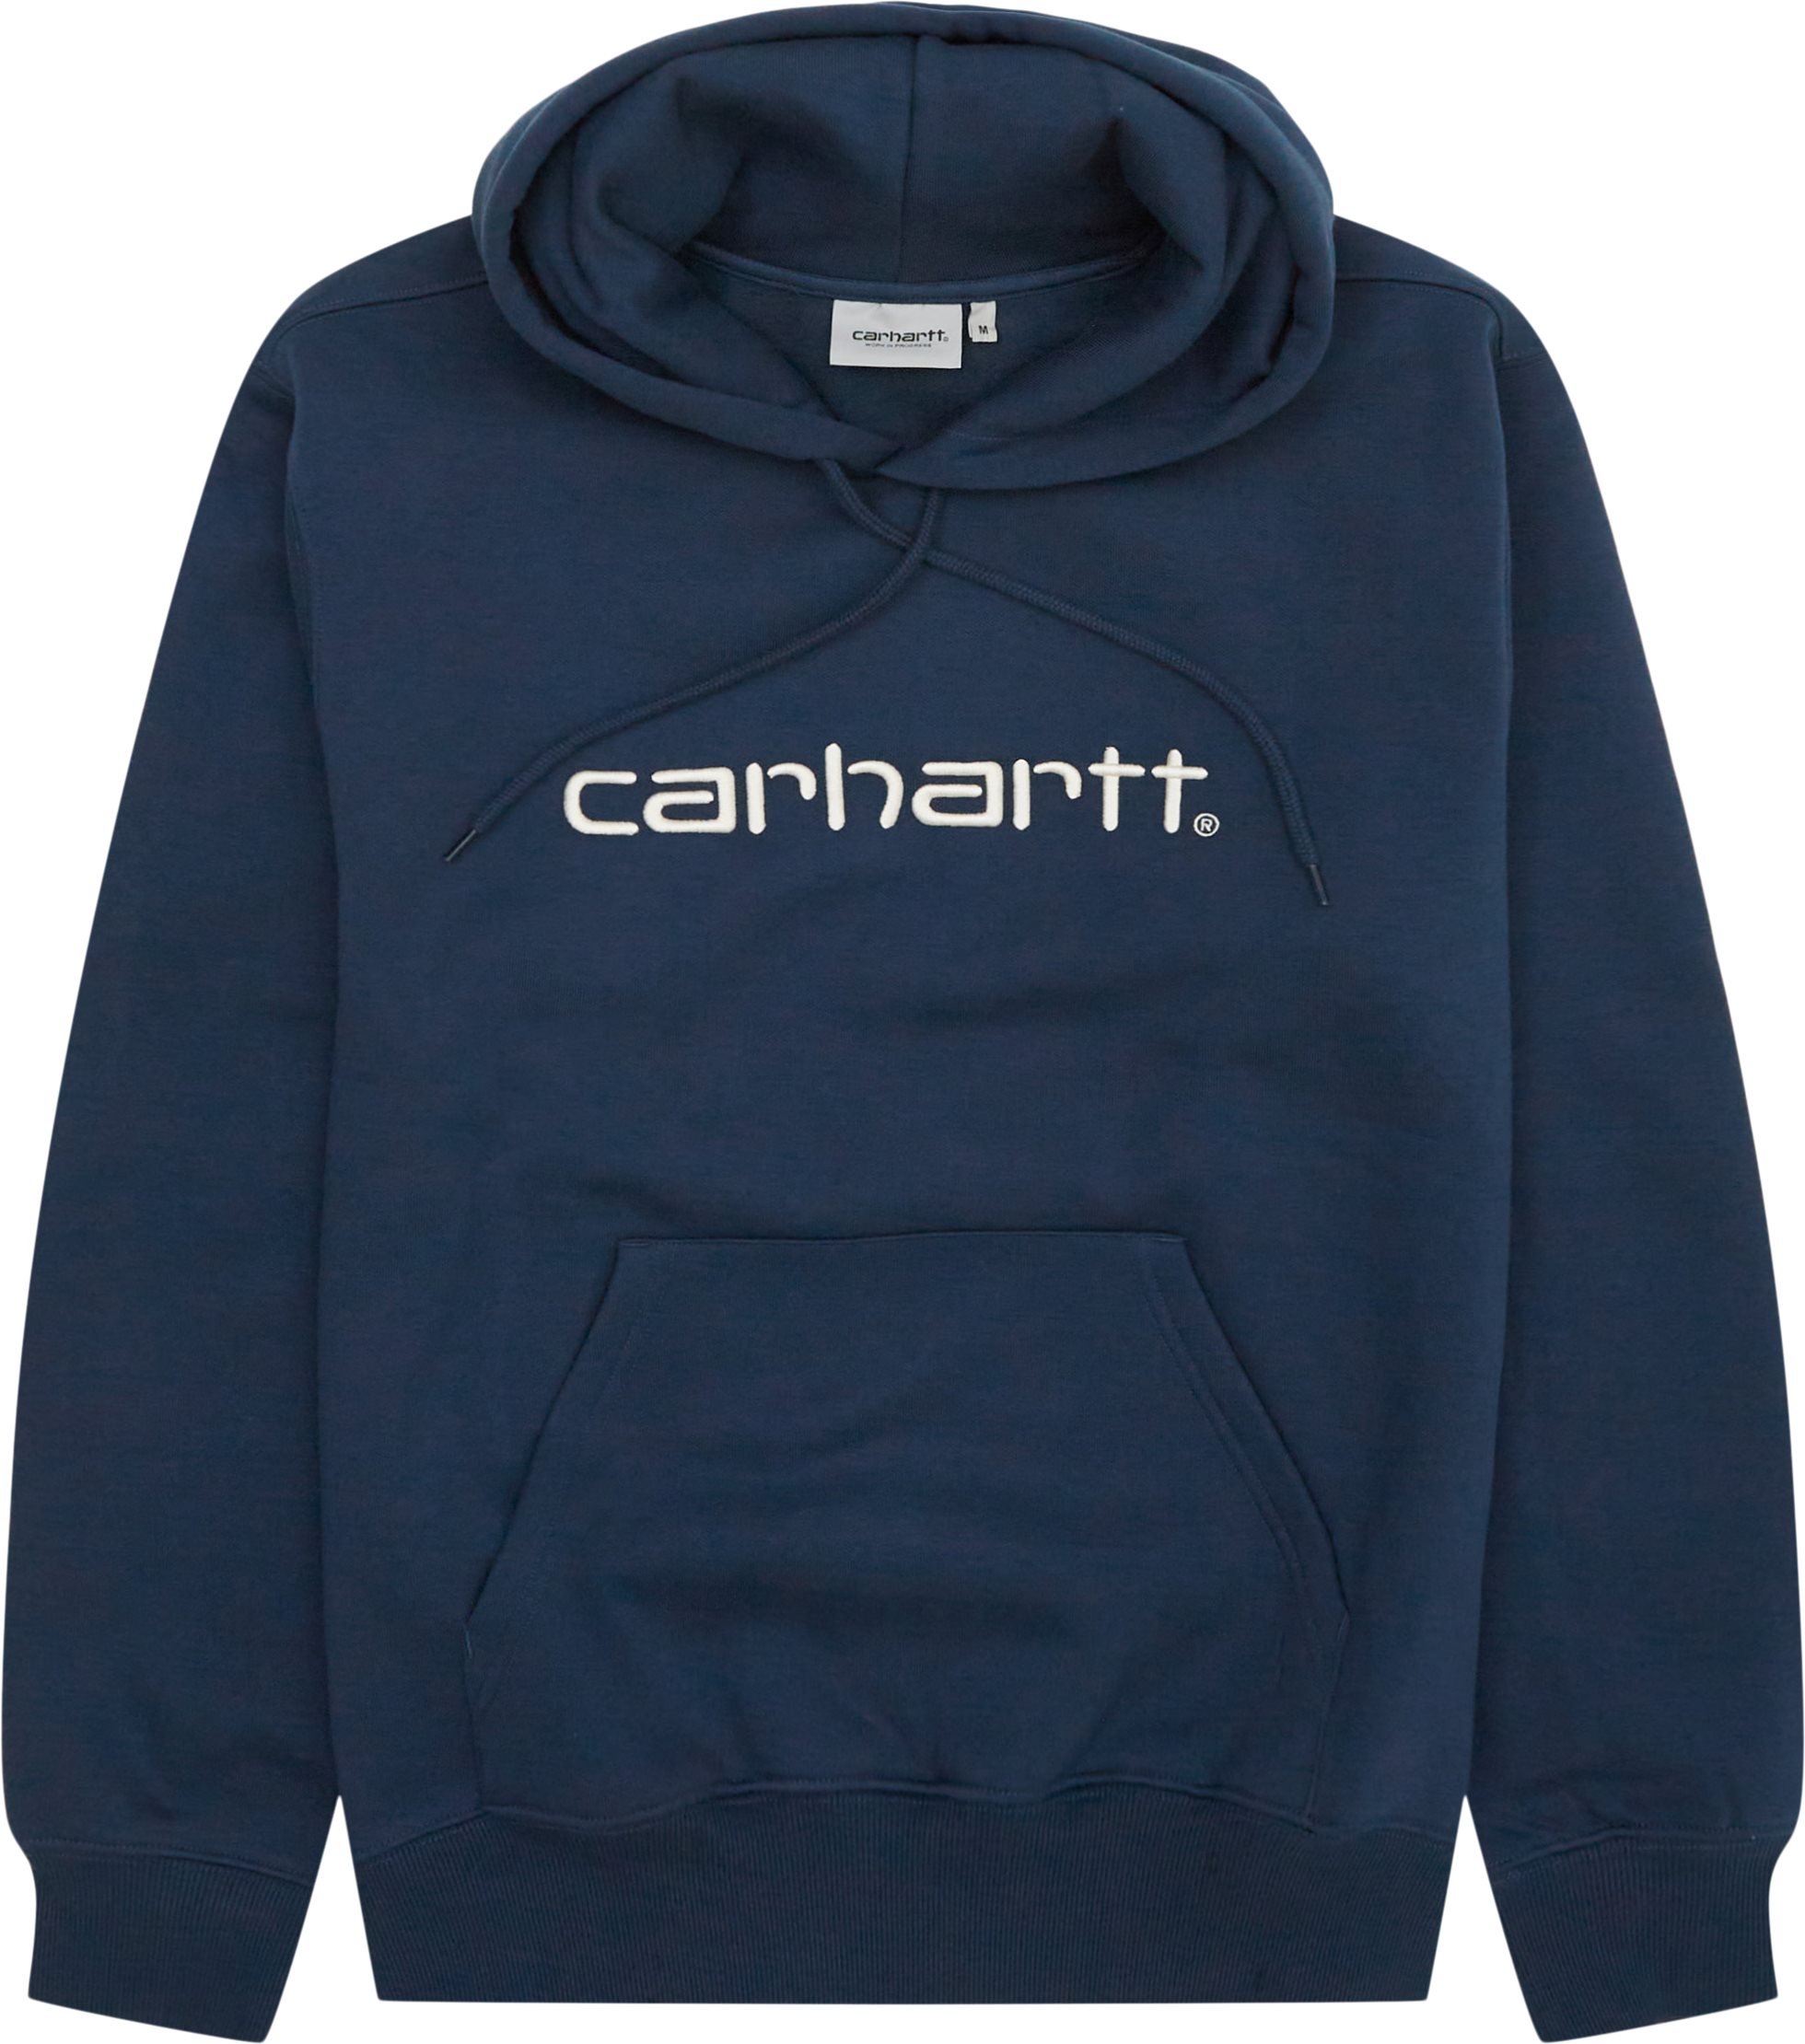 Carhartt WIP Sweatshirts HOODED CARHARTT SWEATSHIRT I030547. Blue